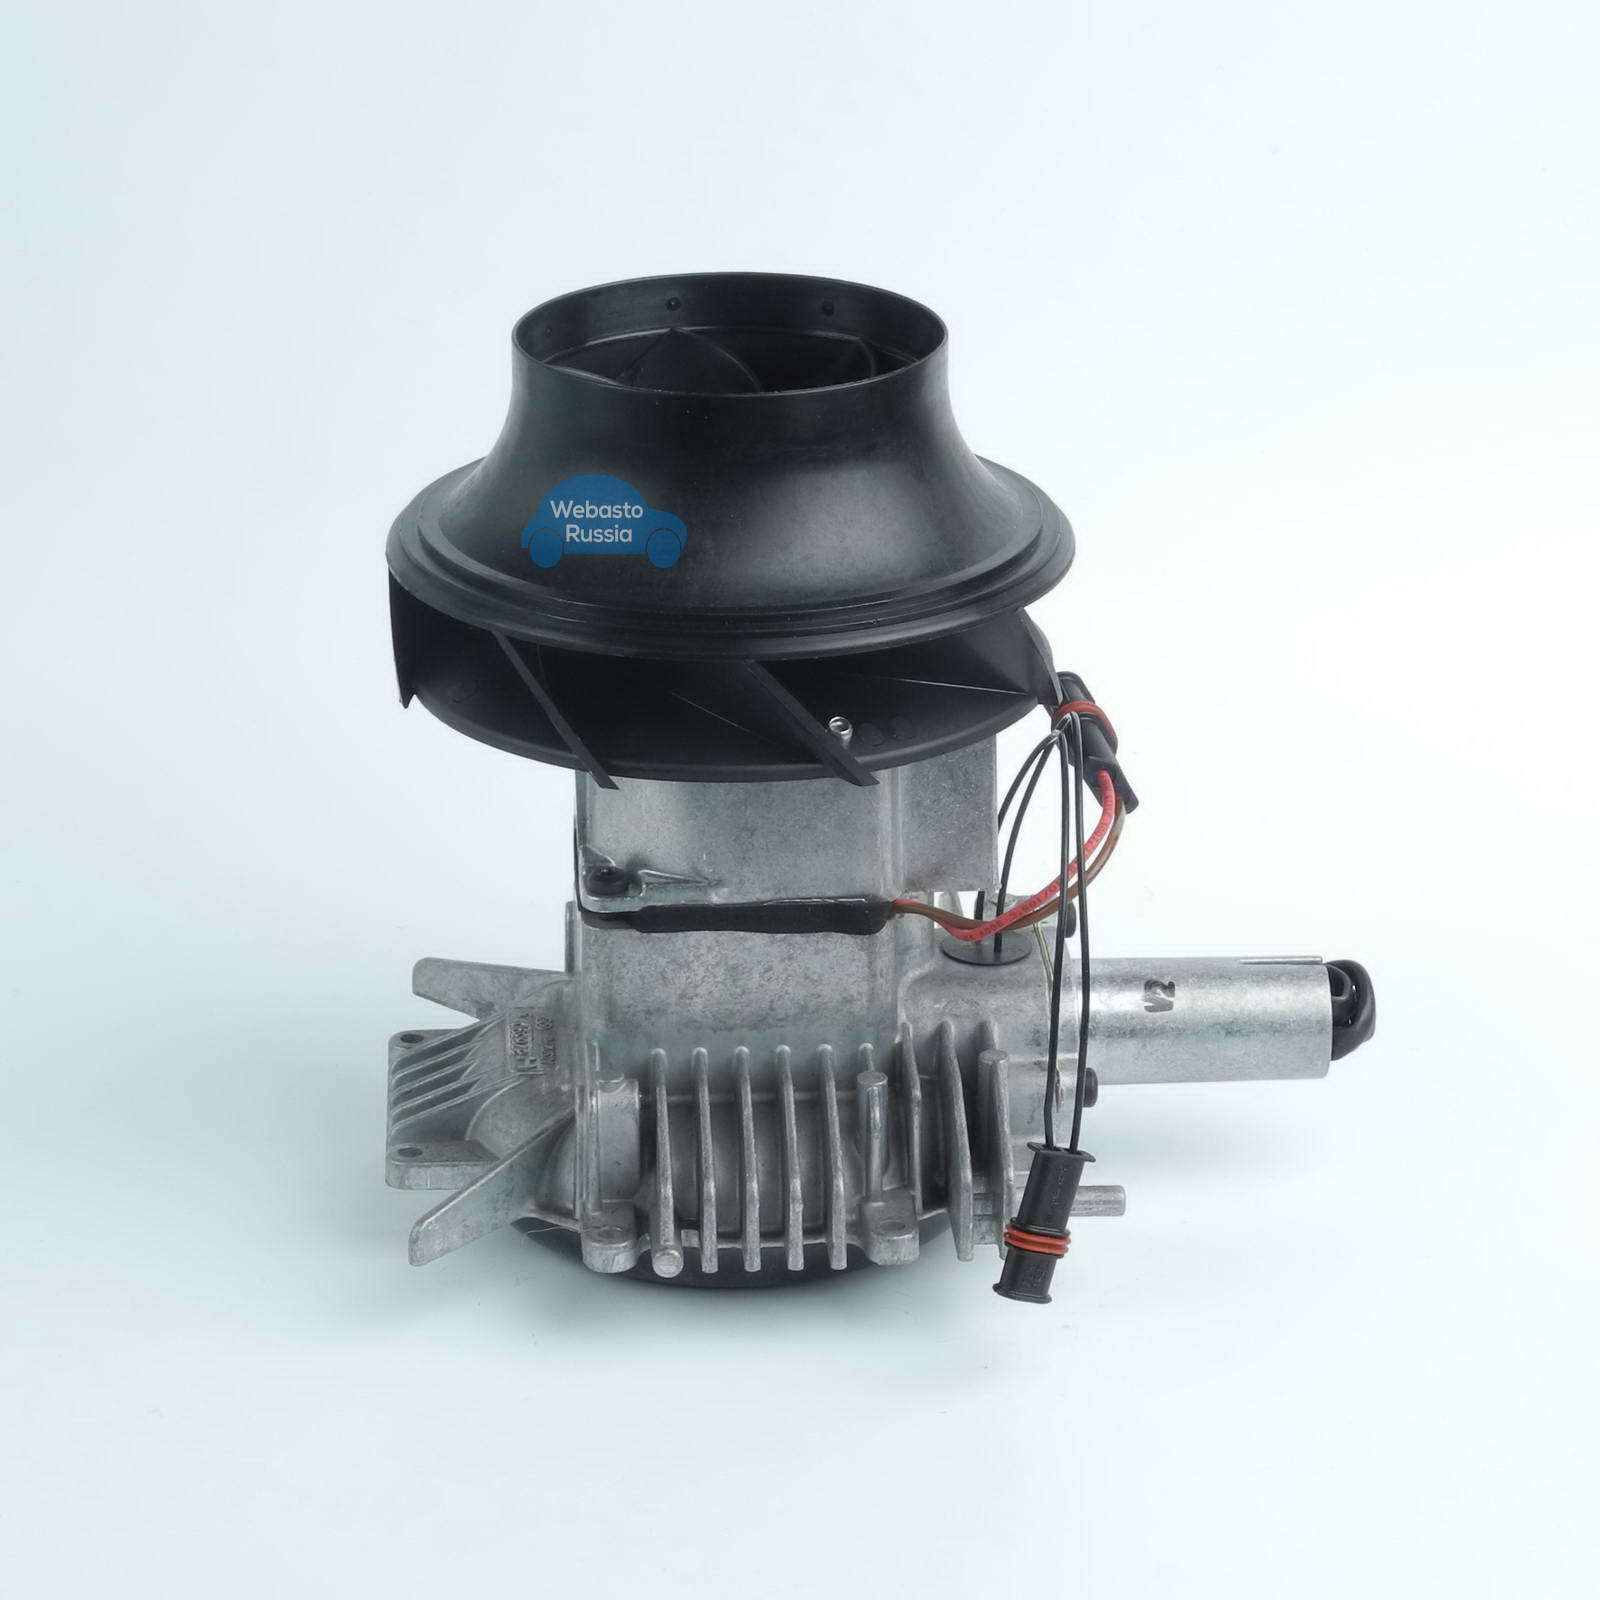 Air blower motor Gebläse Webasto Air Top 3500 ST 24V - buy online